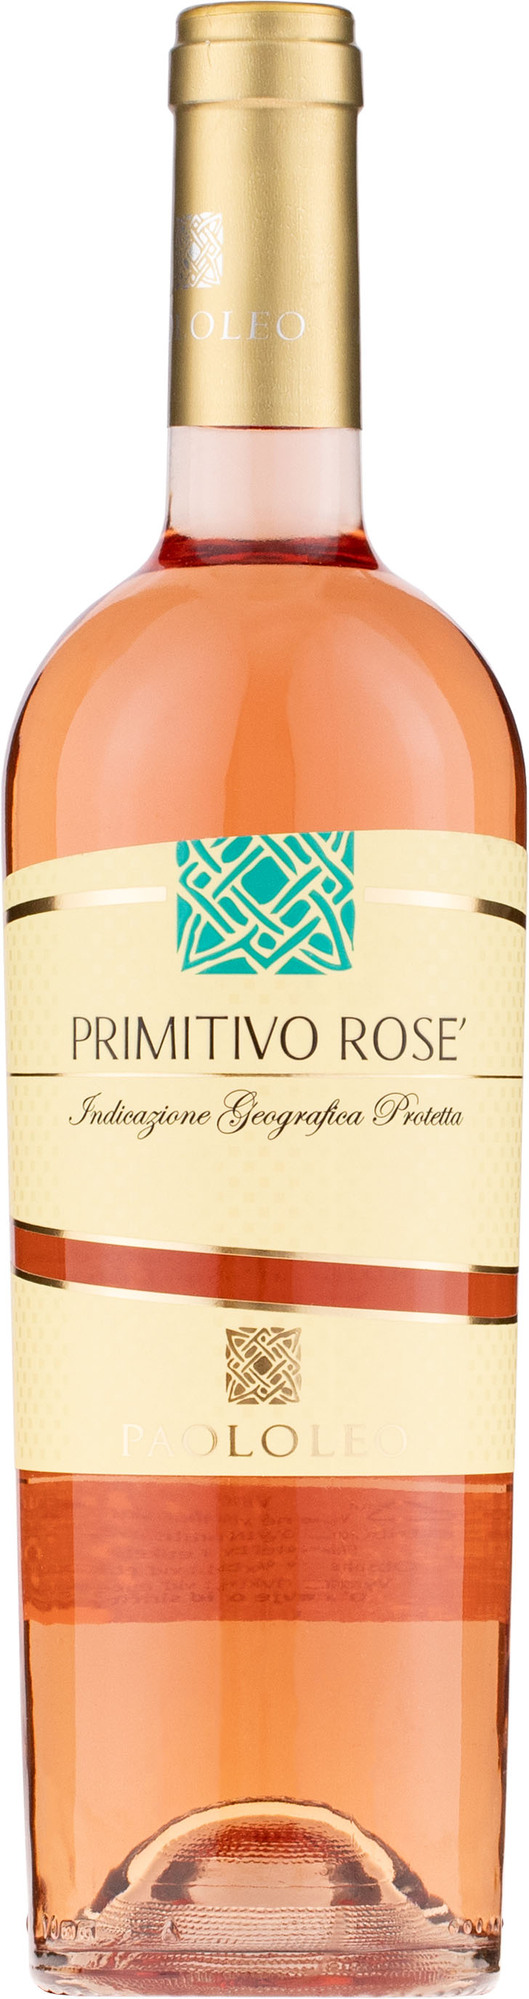 Paololeo Primitivo Rosé Puglia I.G.P. 12,5% 0,75l